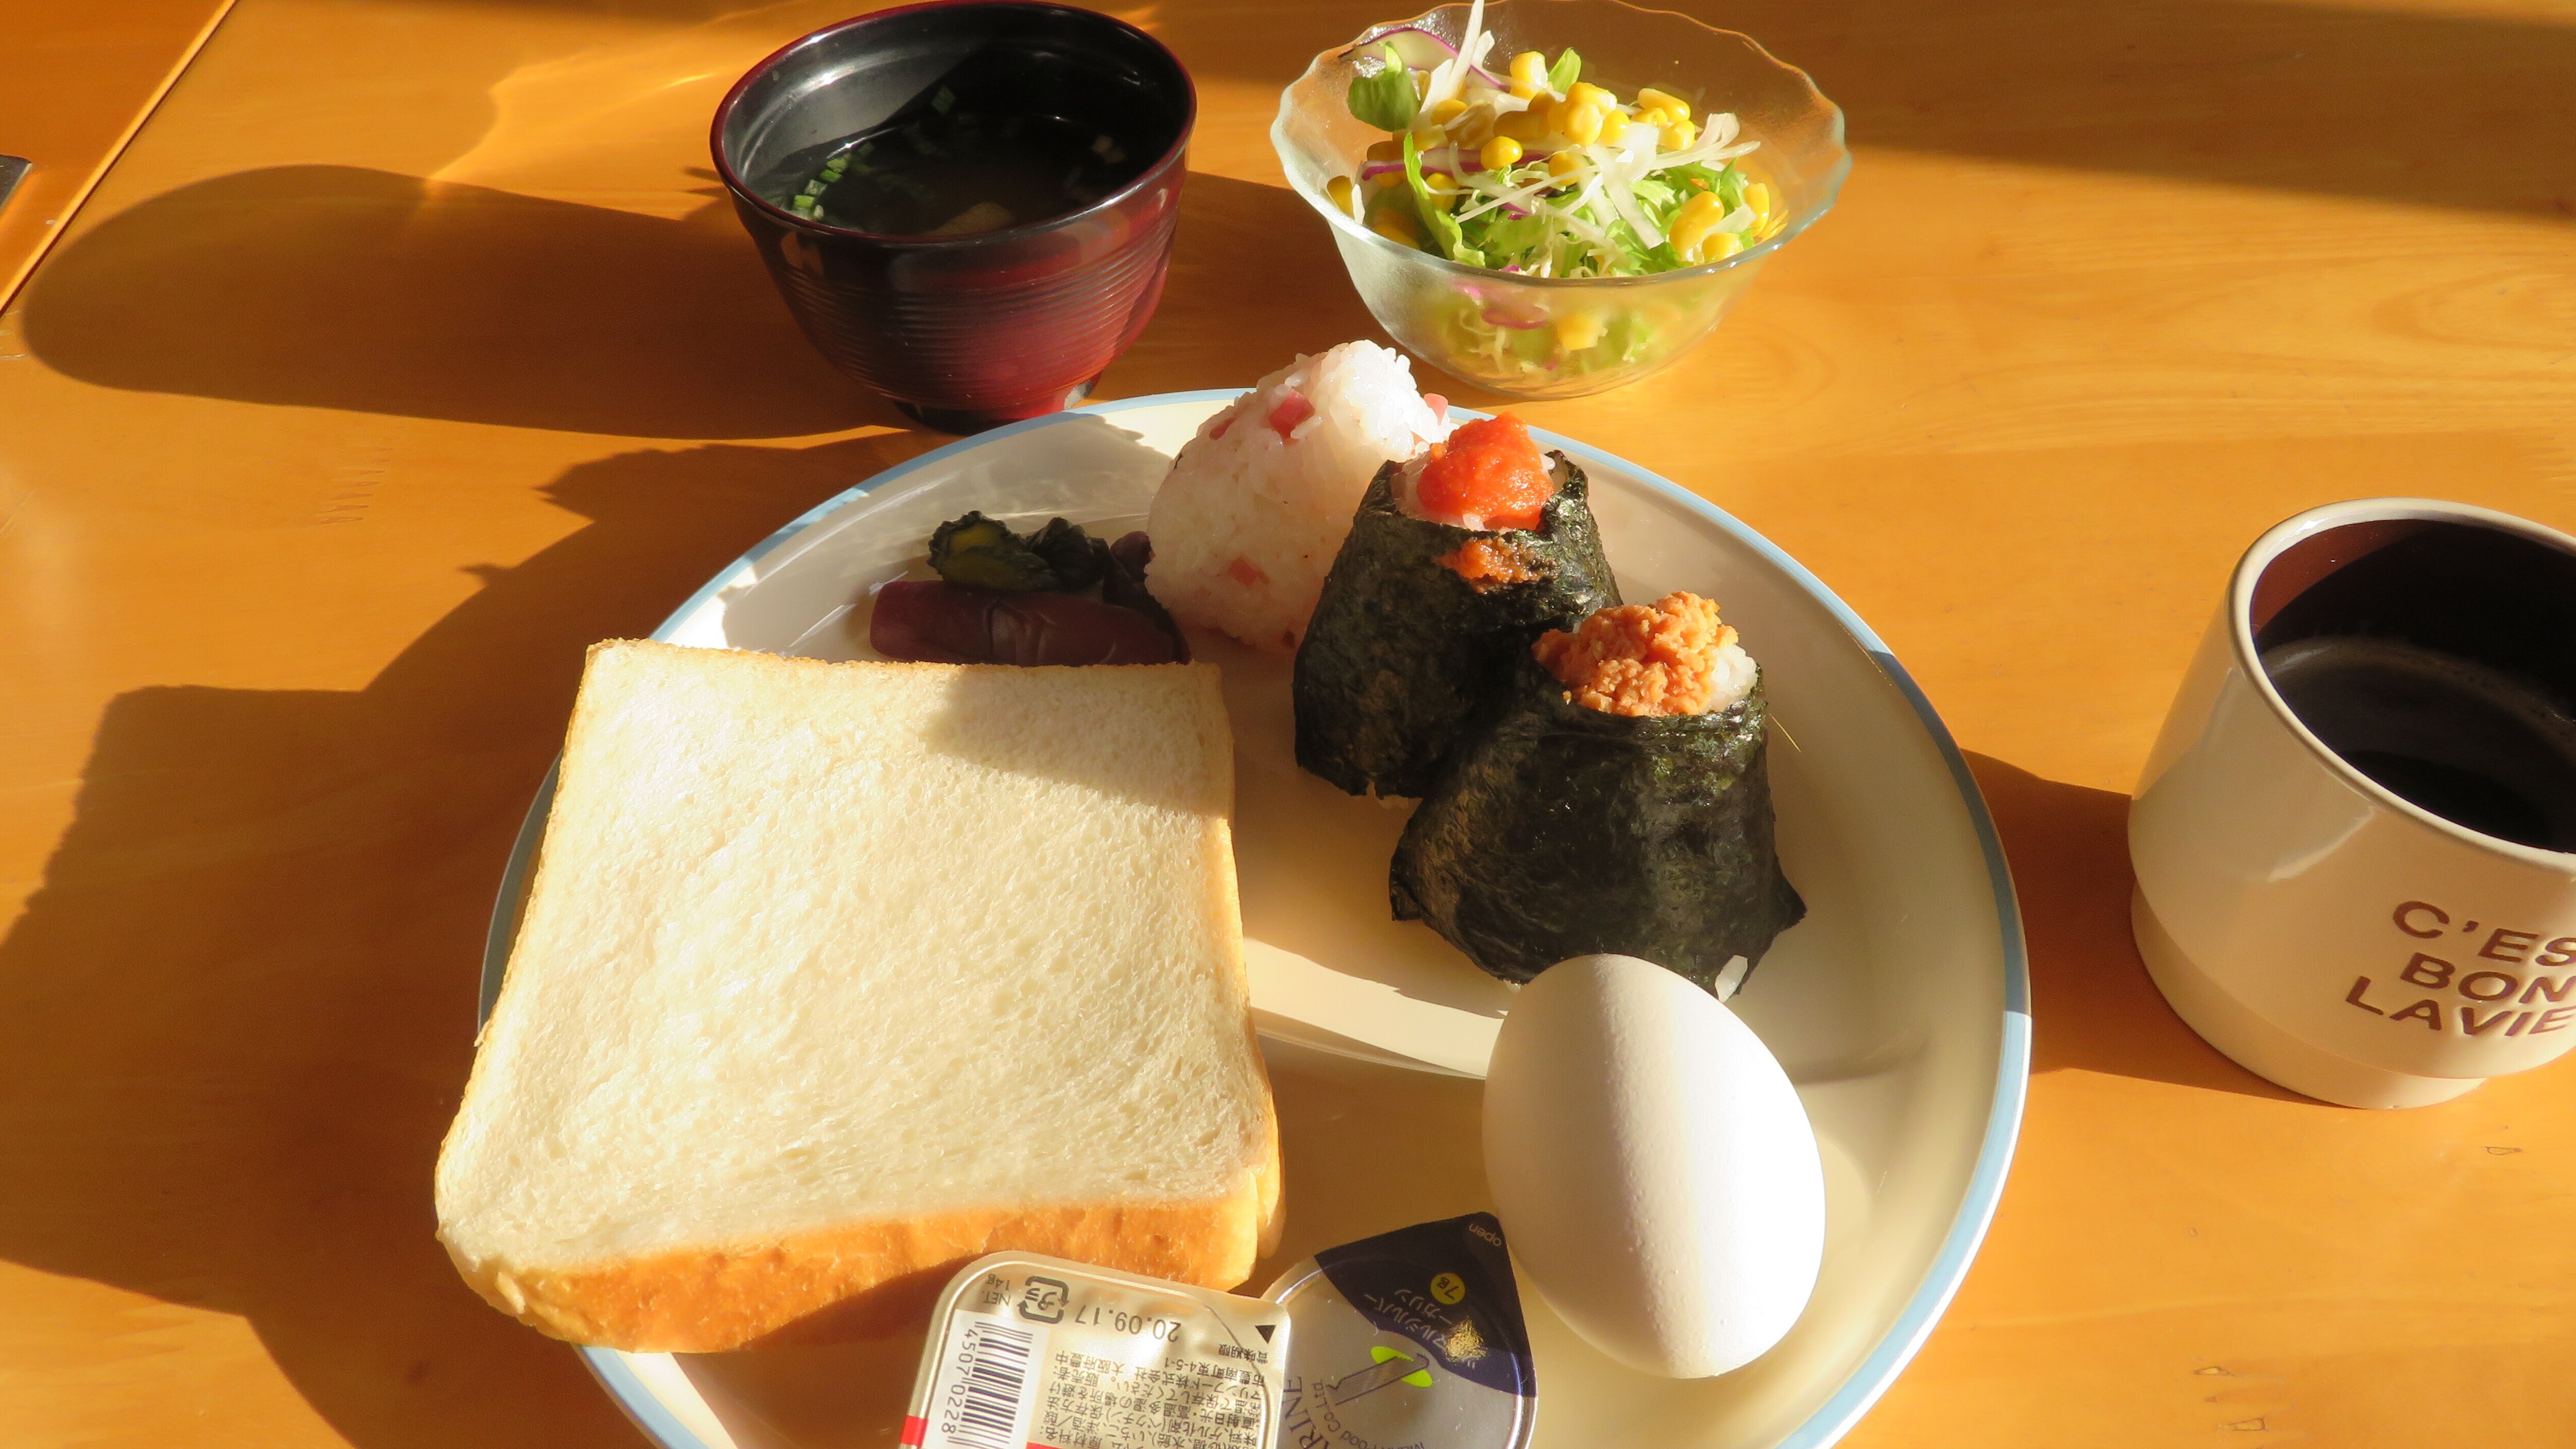 【免費清淡早餐】安排例飯糰、咖啡、味噌湯、沙拉、煮雞蛋等。